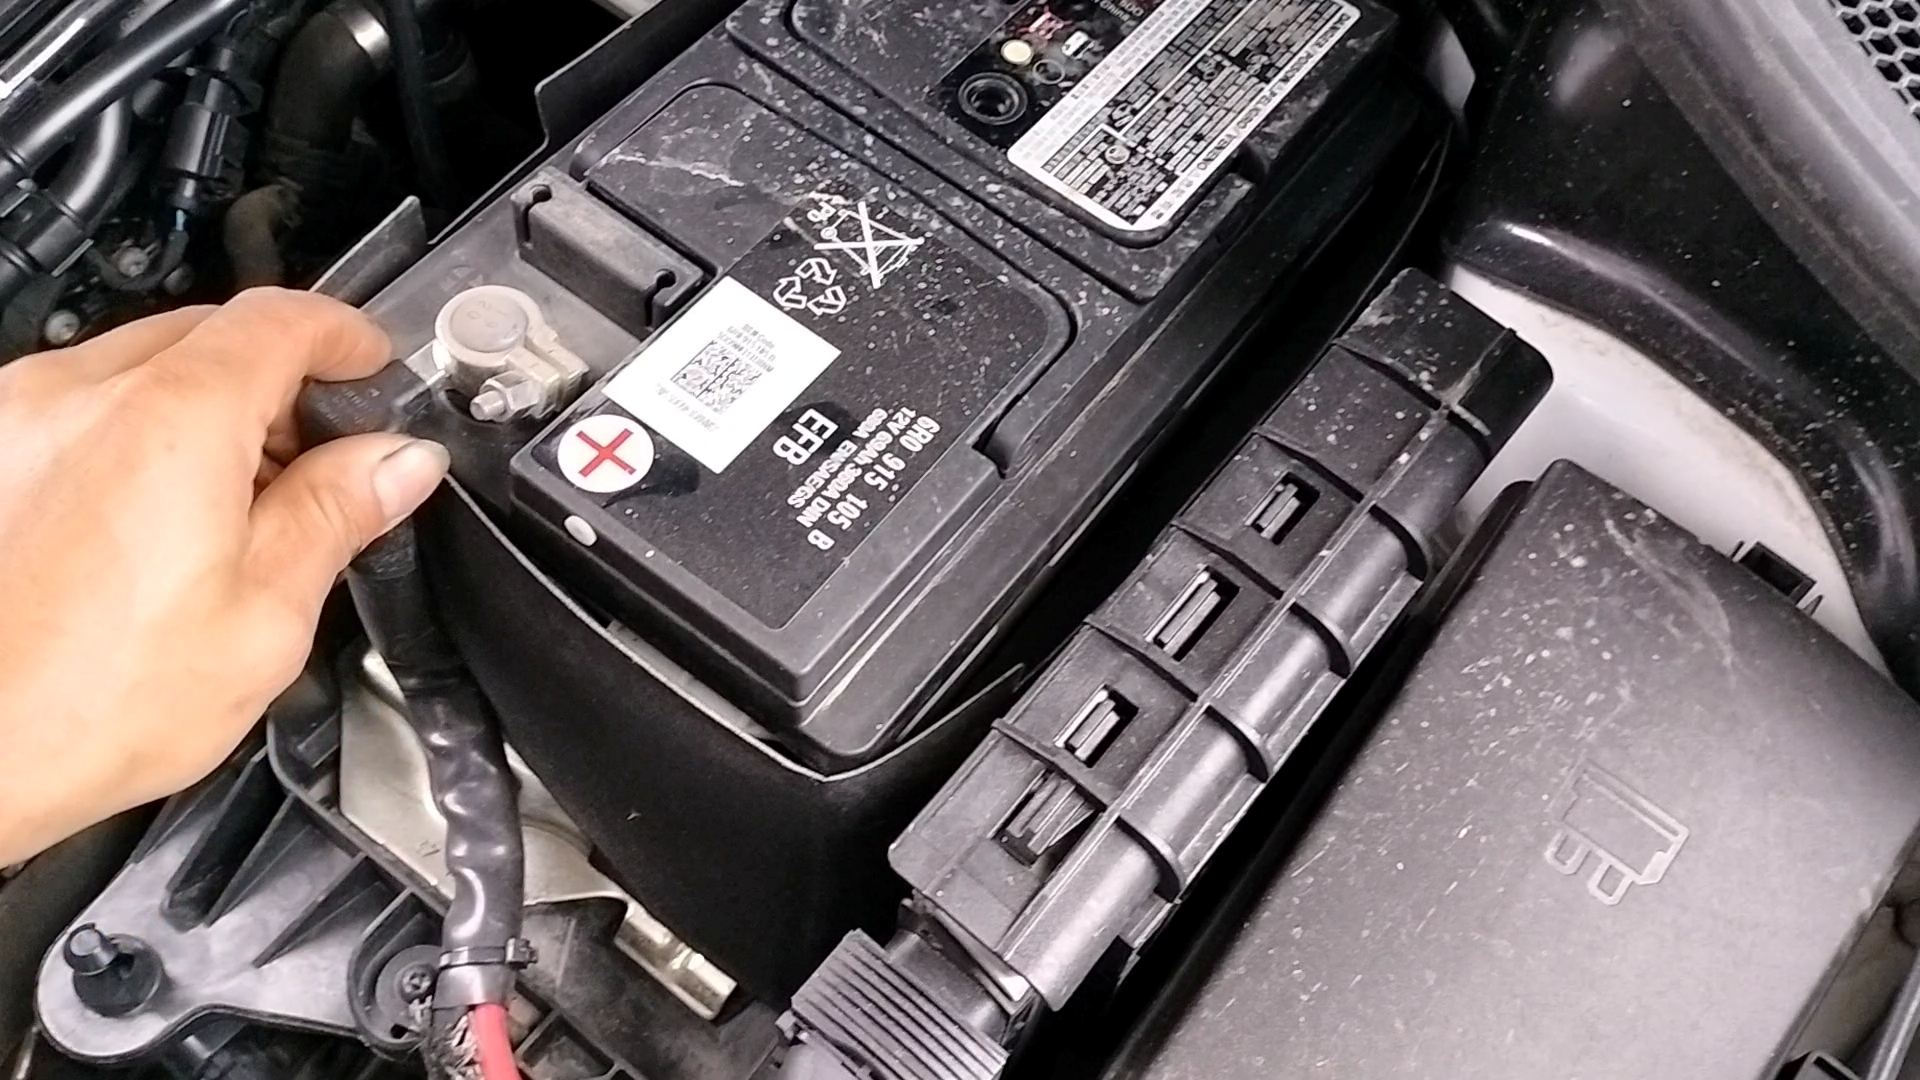 在车子发动机打着火的时候,看仪表盘上面有没有一个电瓶指示灯?